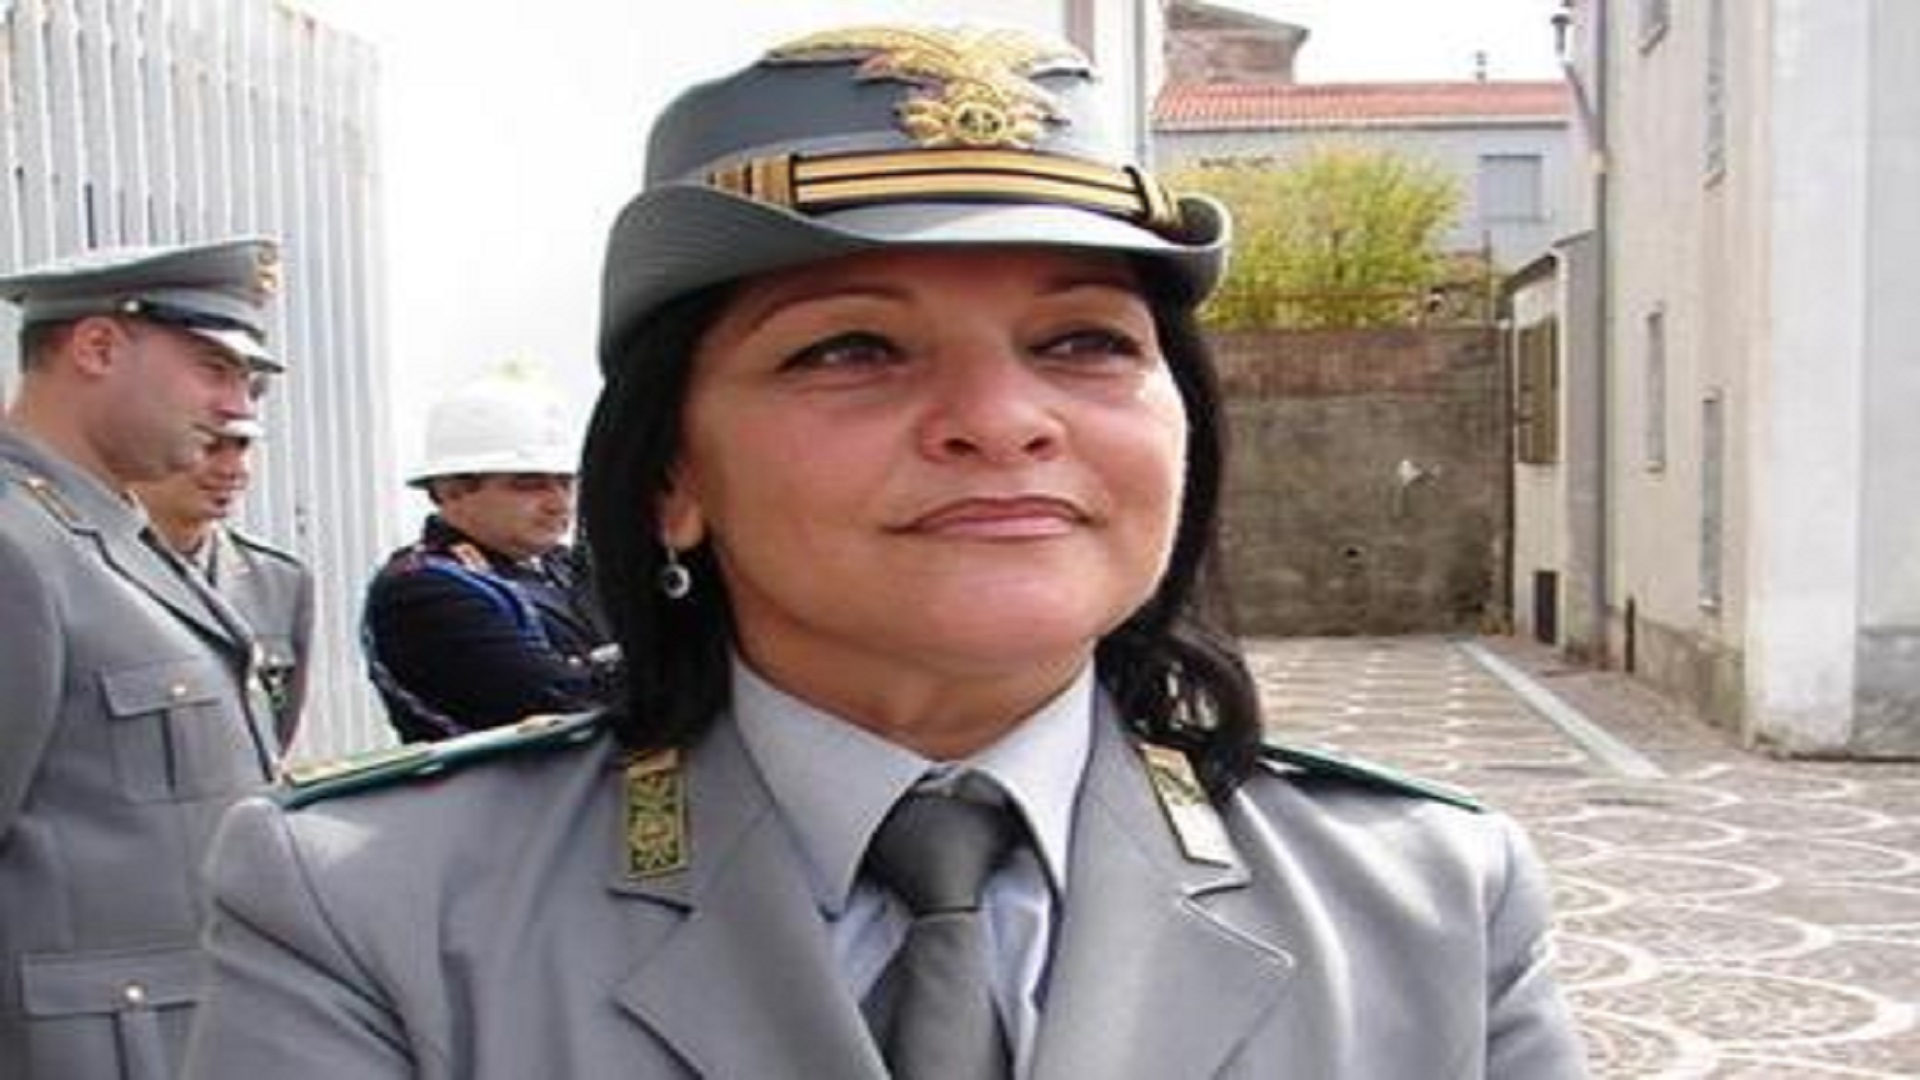 Concussione: definitiva la condanna per Marta Santoro, l’ex comandante della Forestale di Foce Sele. Sconterà sei anni e 6 mesi